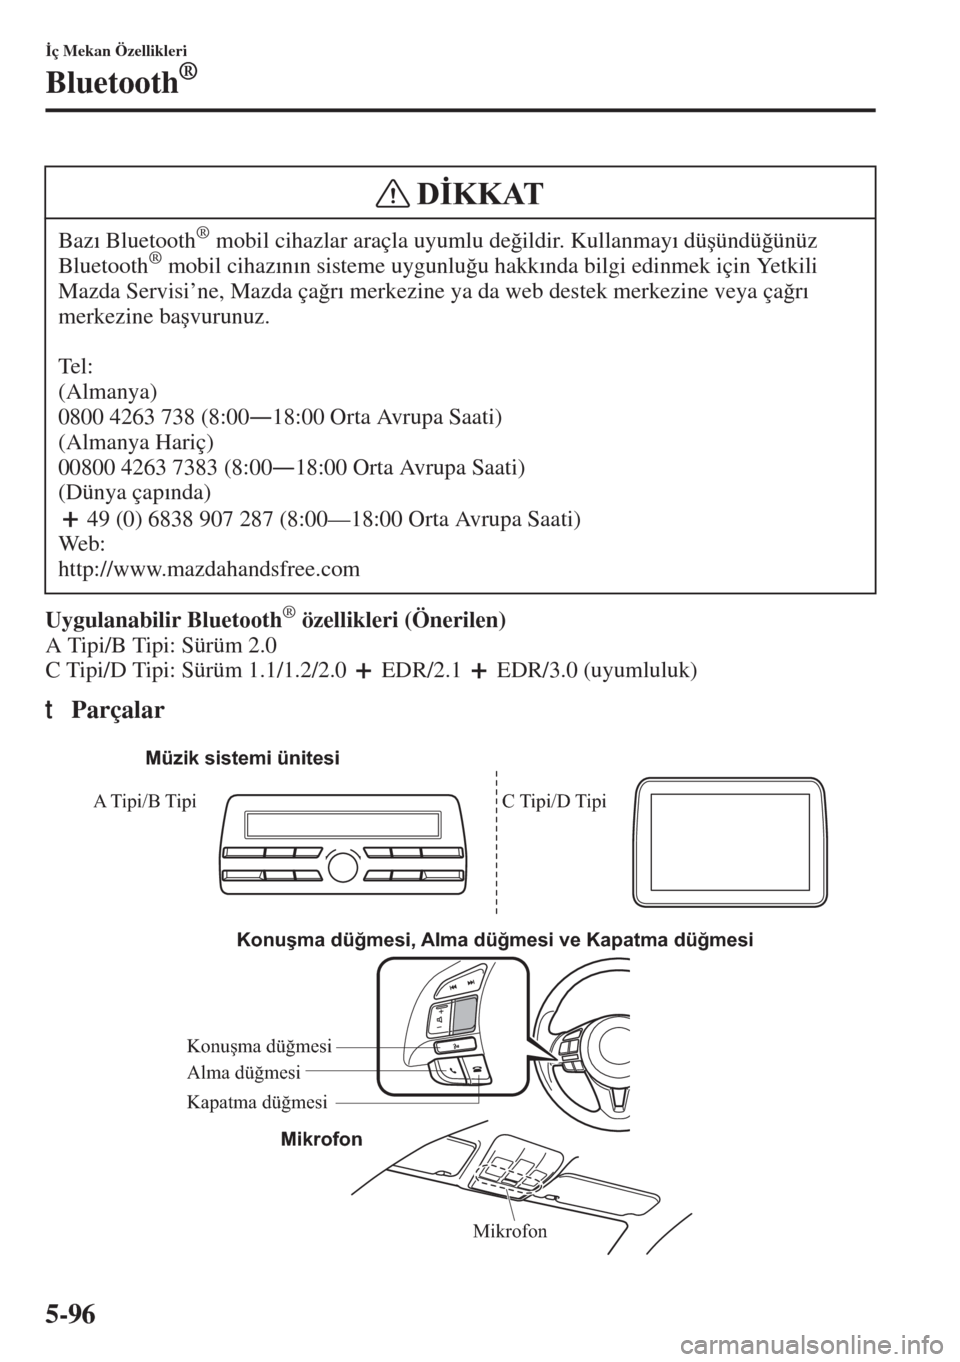 MAZDA MODEL 3 HATCHBACK 2015  Kullanım Kılavuzu (in Turkish) 5-96
�øç Mekan Özellikleri
Bluetooth®
Uygulanabilir Bluetooth® özellikleri (Önerilen) 
A Tipi/B Tipi: Sürüm 2.0
C Tipi/D Tipi: Sürüm 1.1/1.2/2.0   EDR/2.1   EDR/3.0 (uyumluluk)
tParçalar
B